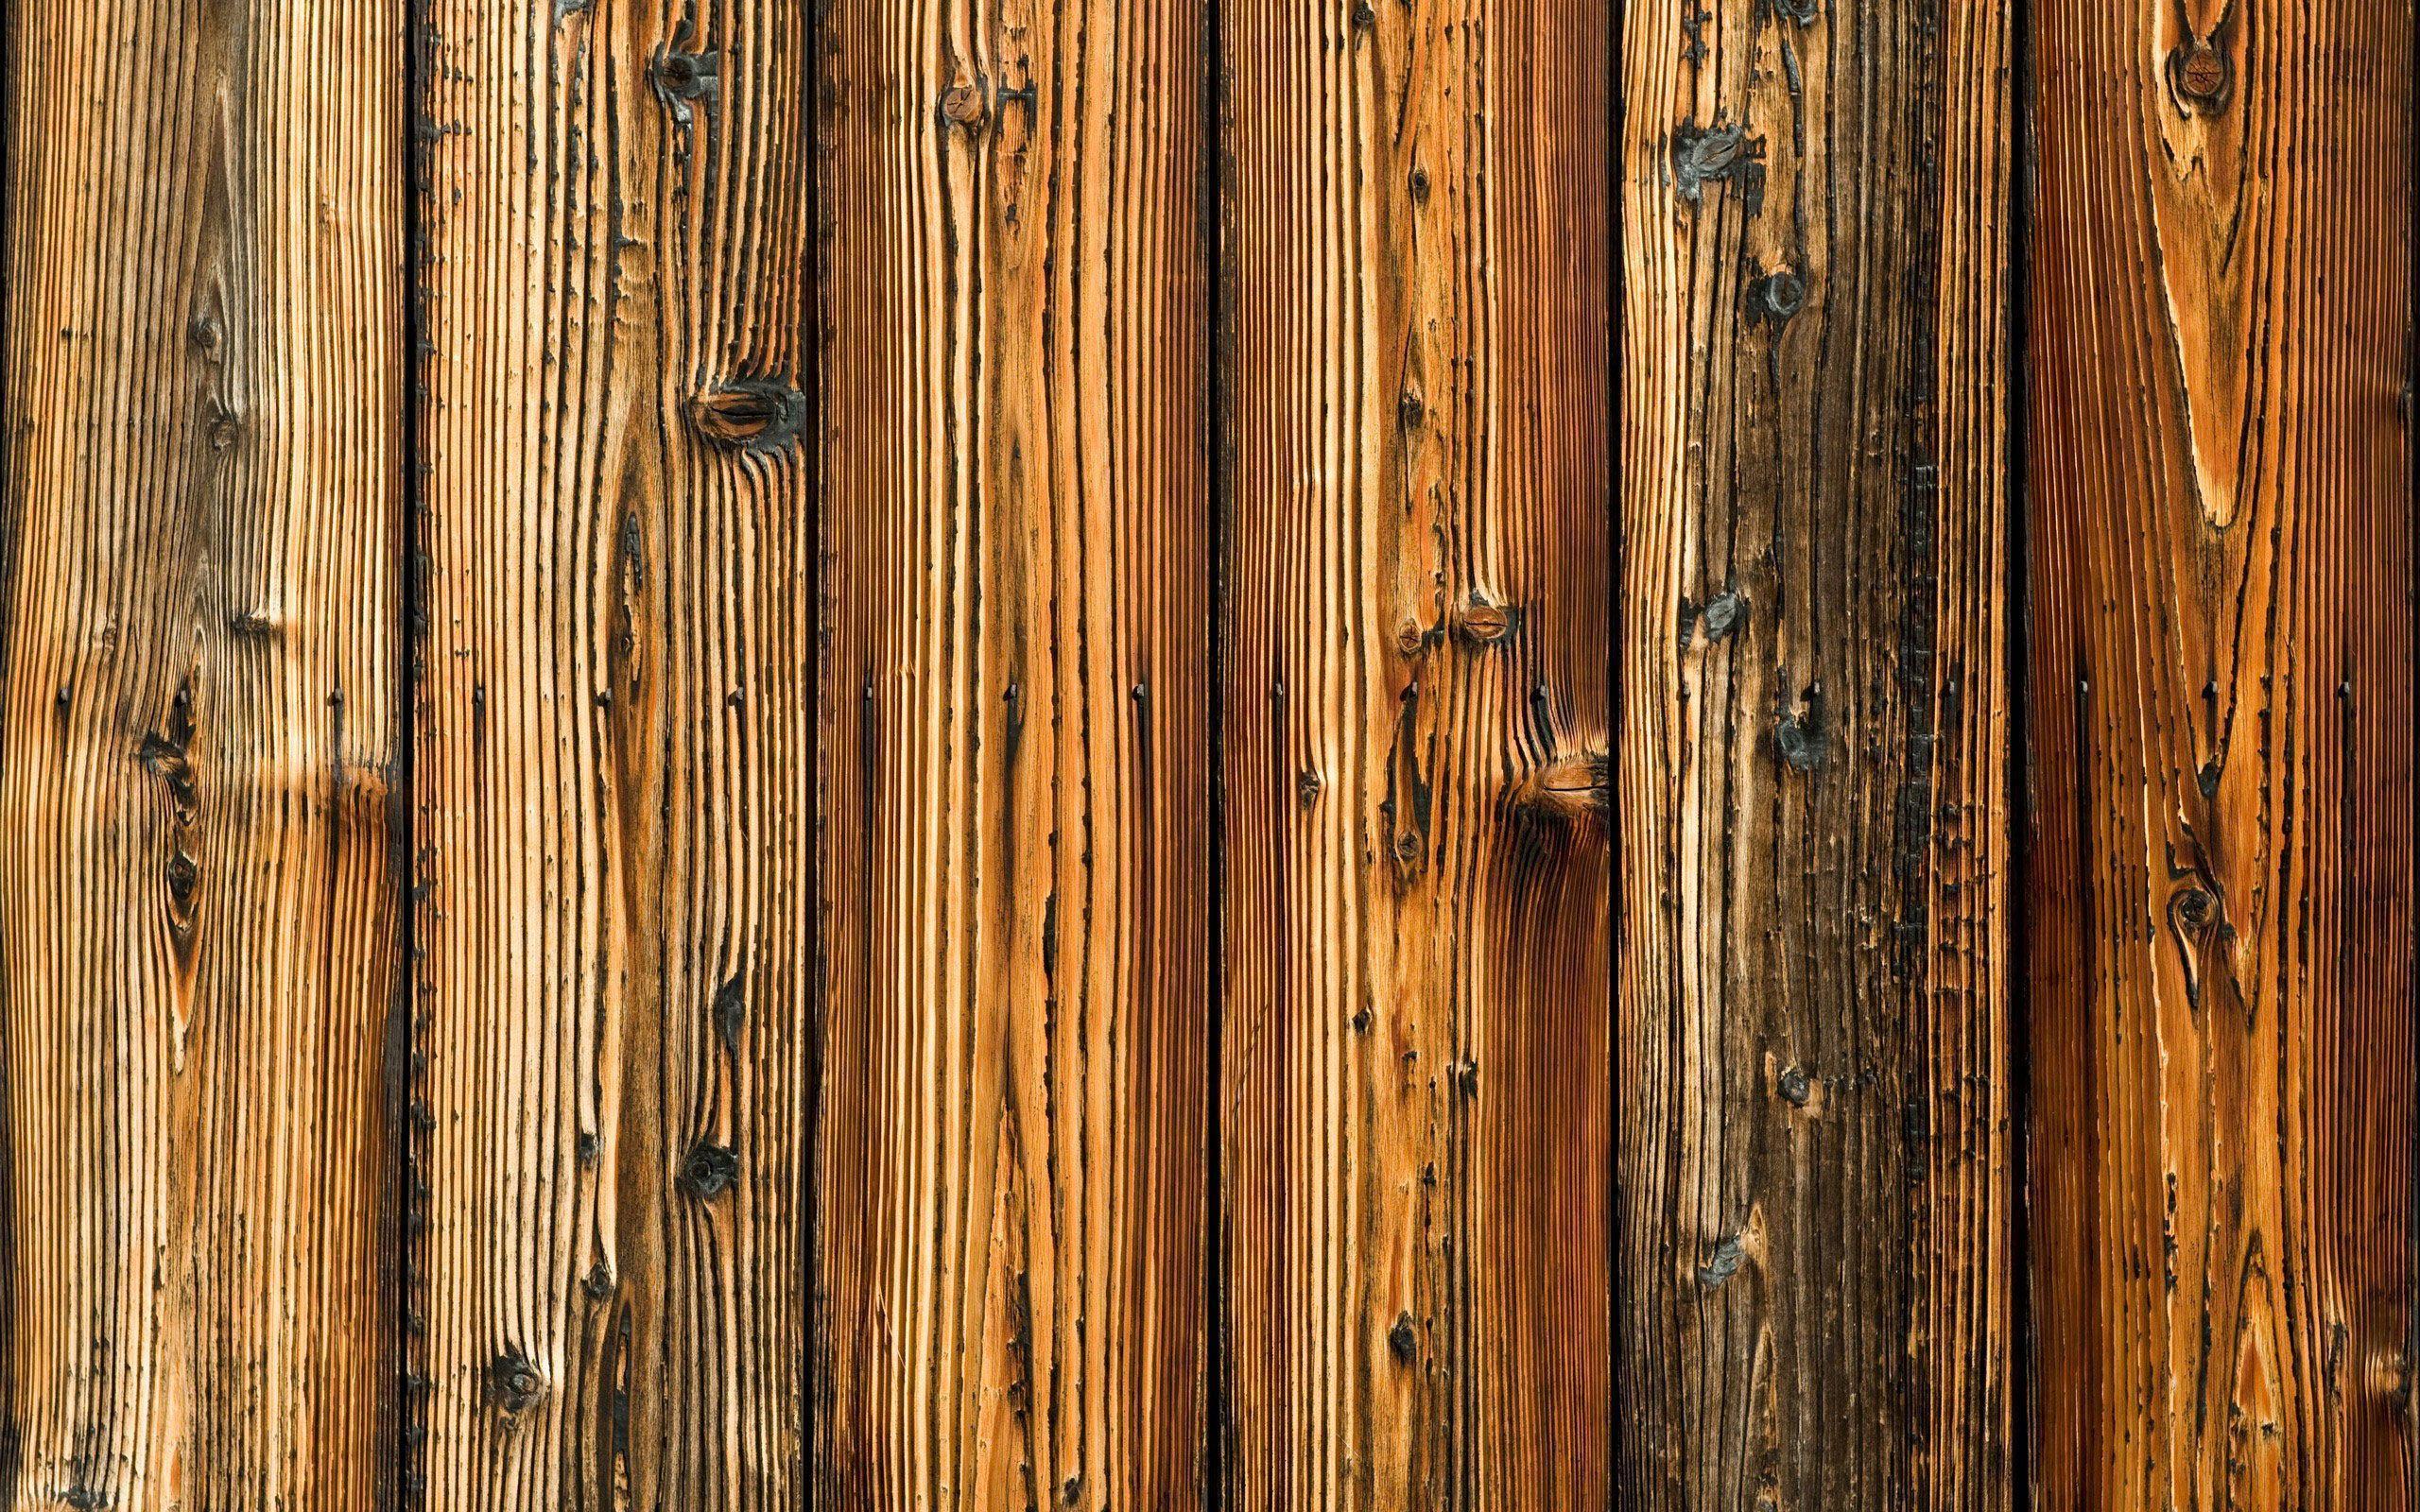 Rustic Wood Wallpaper